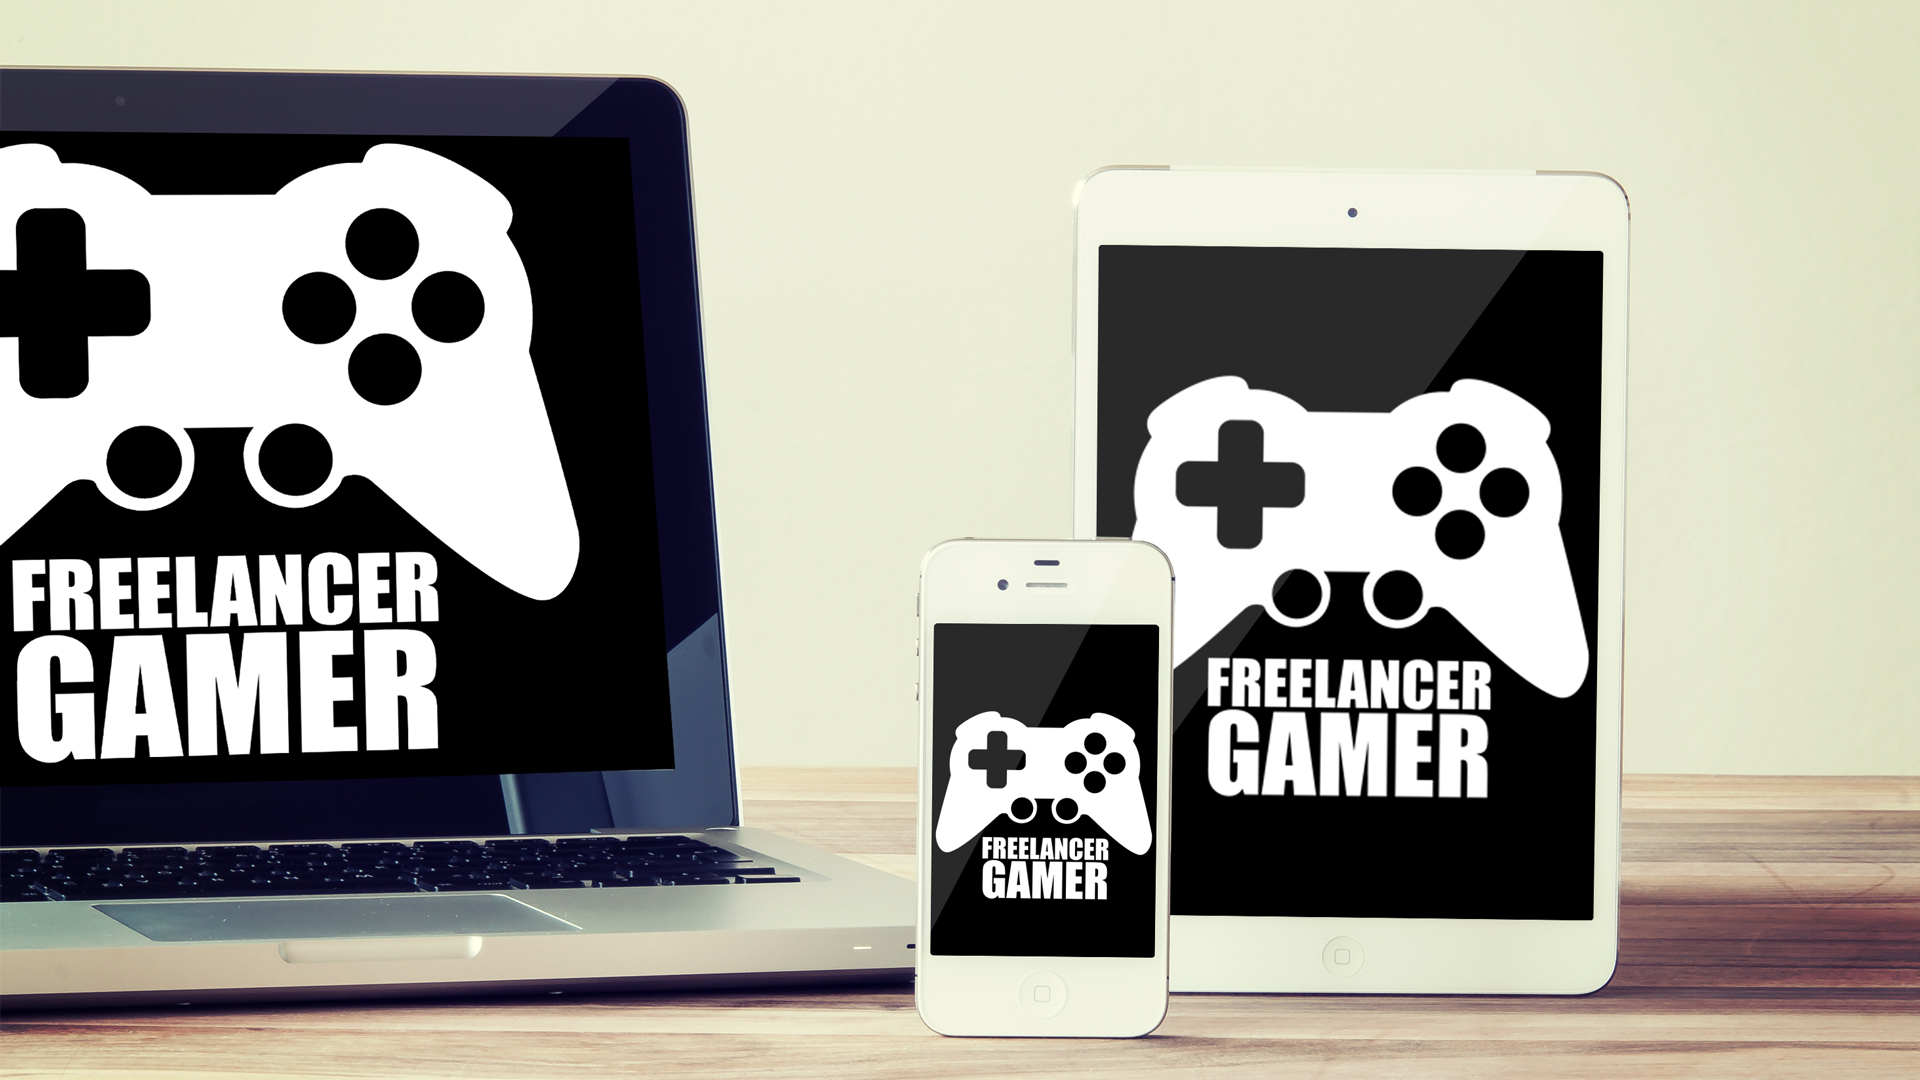 Freelancer Gamer Wallpaper 1920x1080 and 1080x1920 for Mobile |  FreelancerGamer